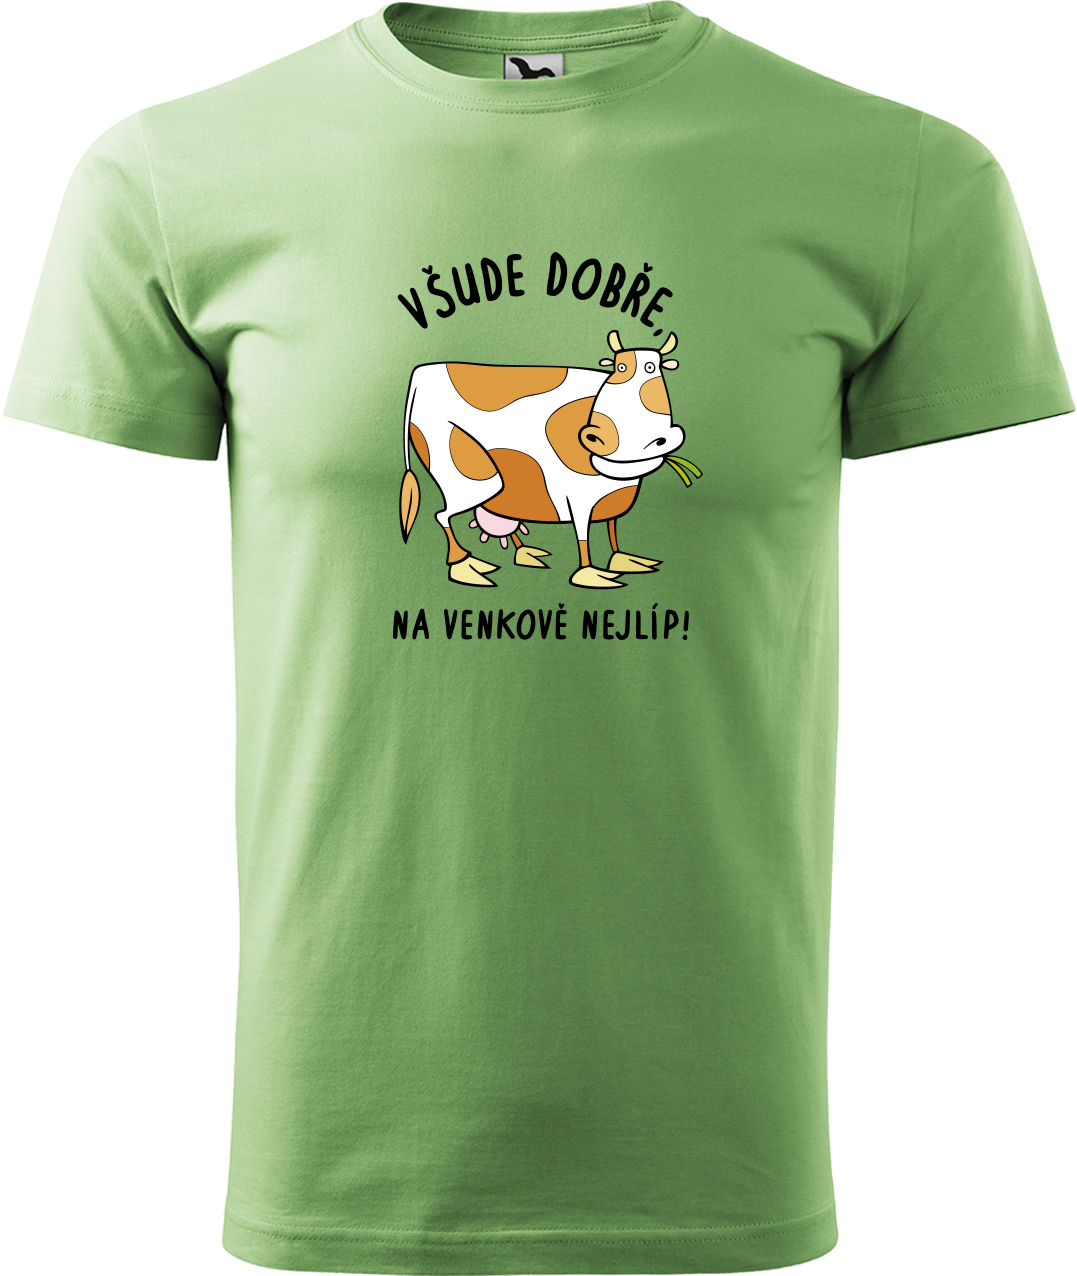 Pánské tričko s krávou - Všude dobře, na venkově nejlíp! Velikost: M, Barva: Trávově zelená (39), Střih: pánský